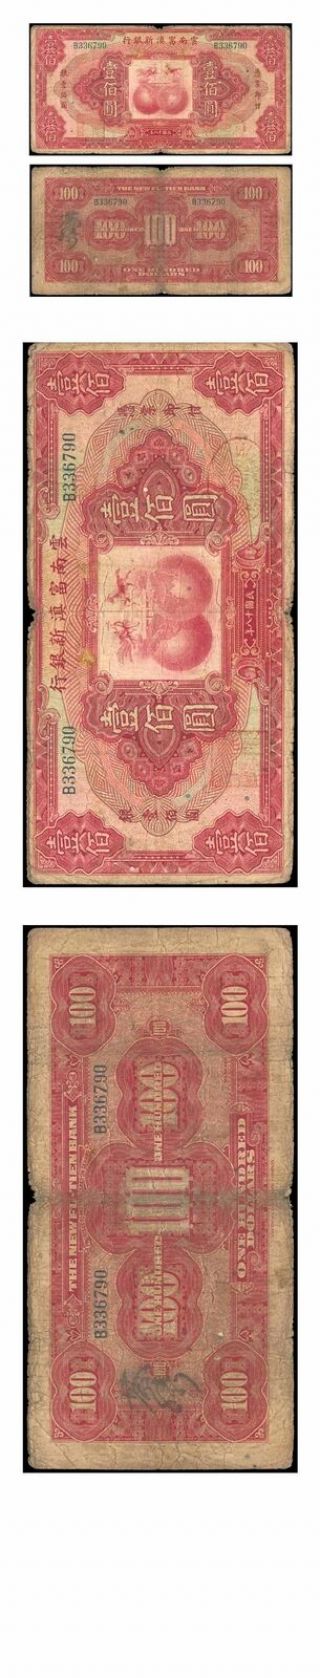 China The Fu - Tien Bank 100 Yuan 1929 Pick S - 3000 Very Good